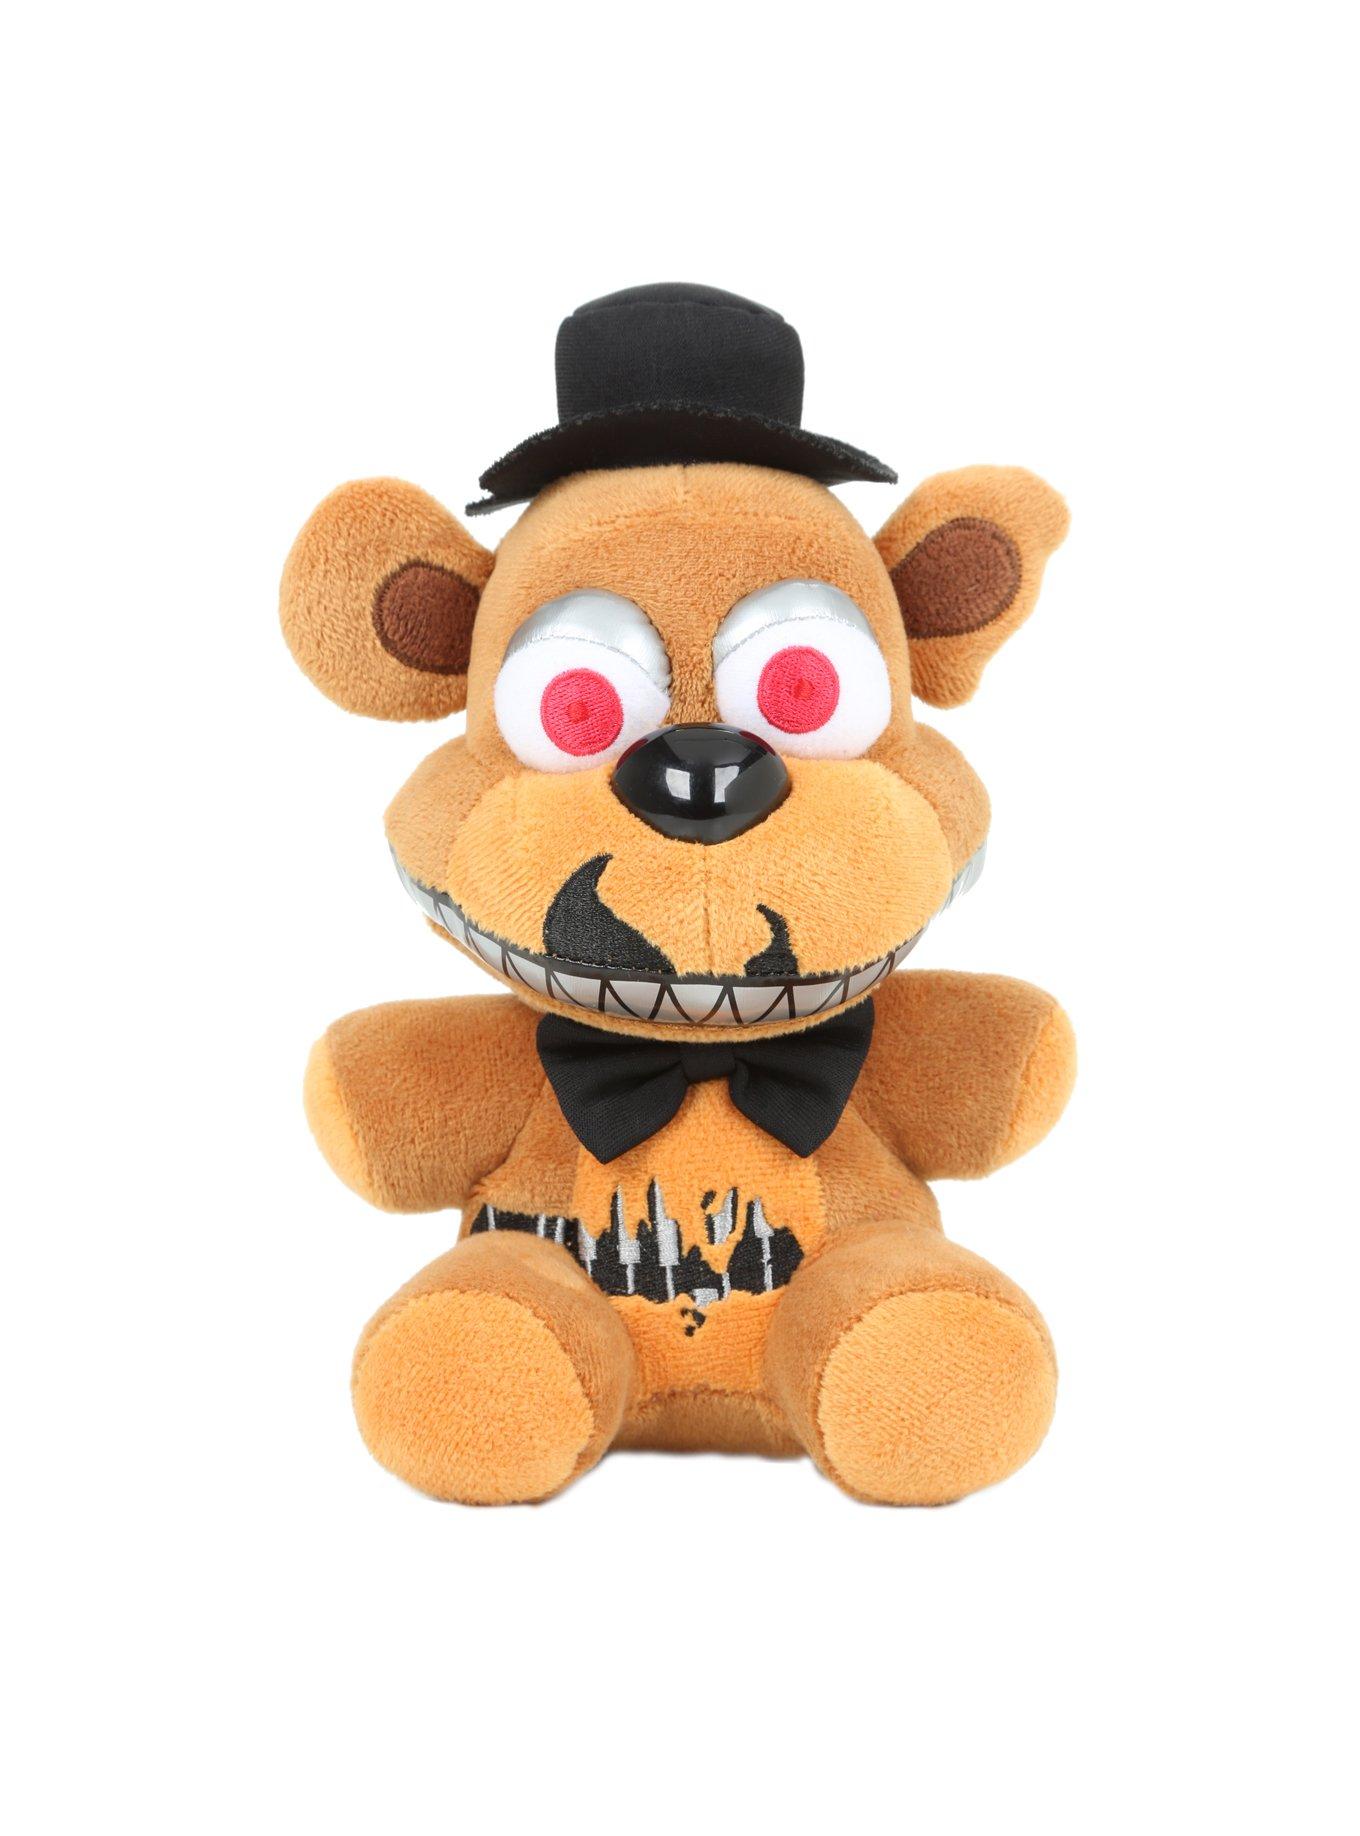 Nightmare Freddy 10” Plush Five Nights at Freddy's Fazbear